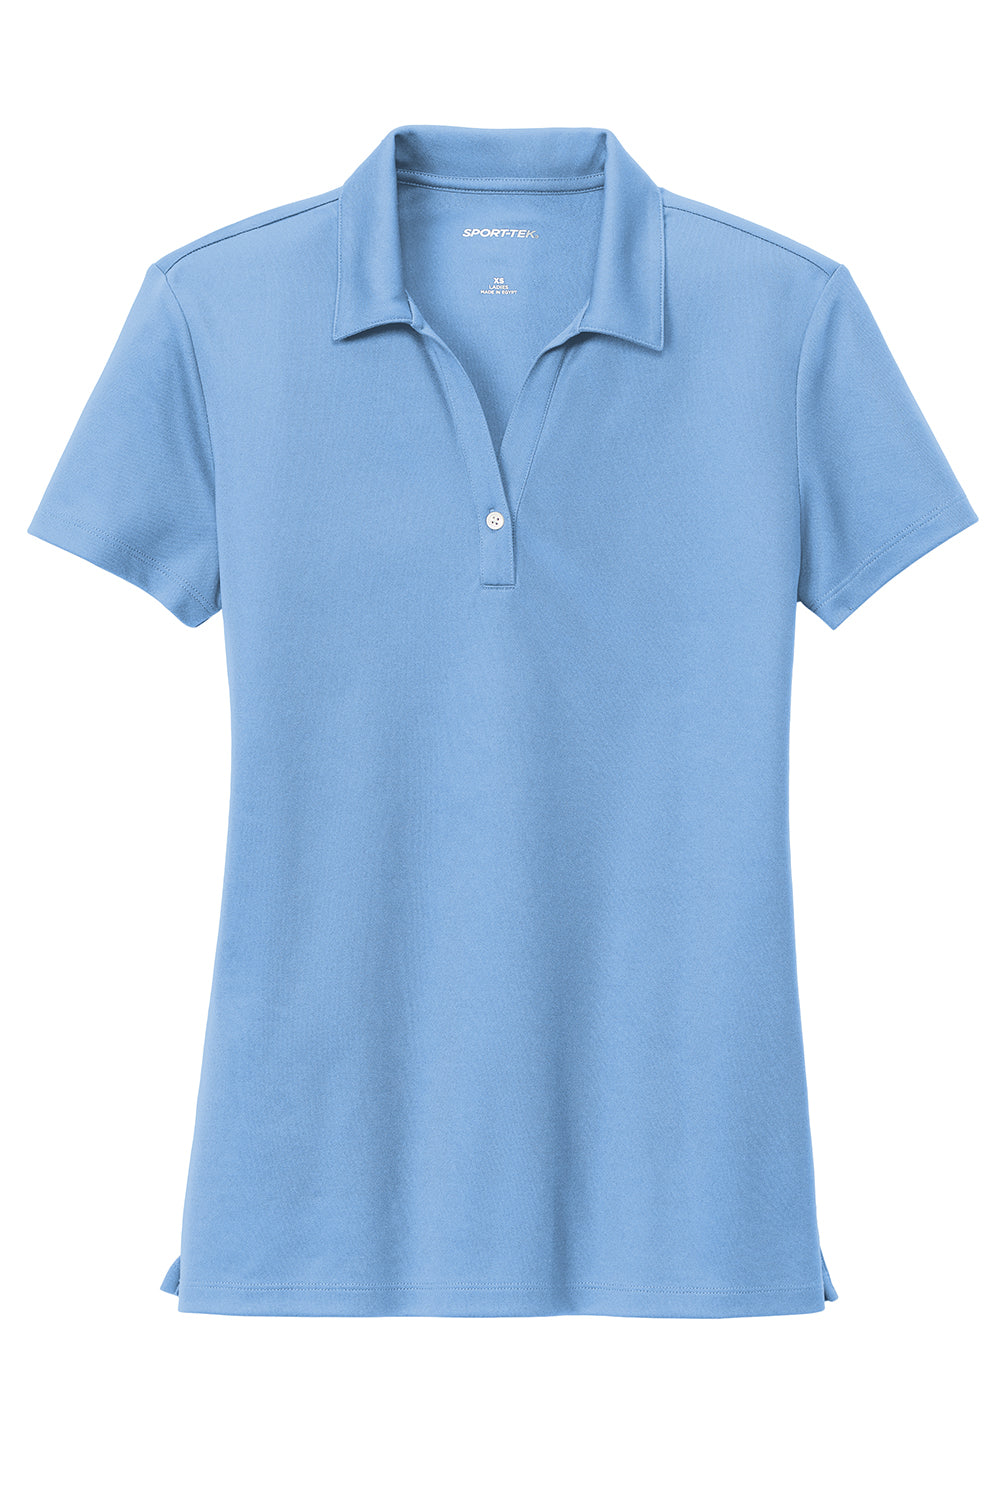 Sport-Tek LST740 Womens UV Micropique Short Sleeve Polo Shirt Carolina Blue Flat Front